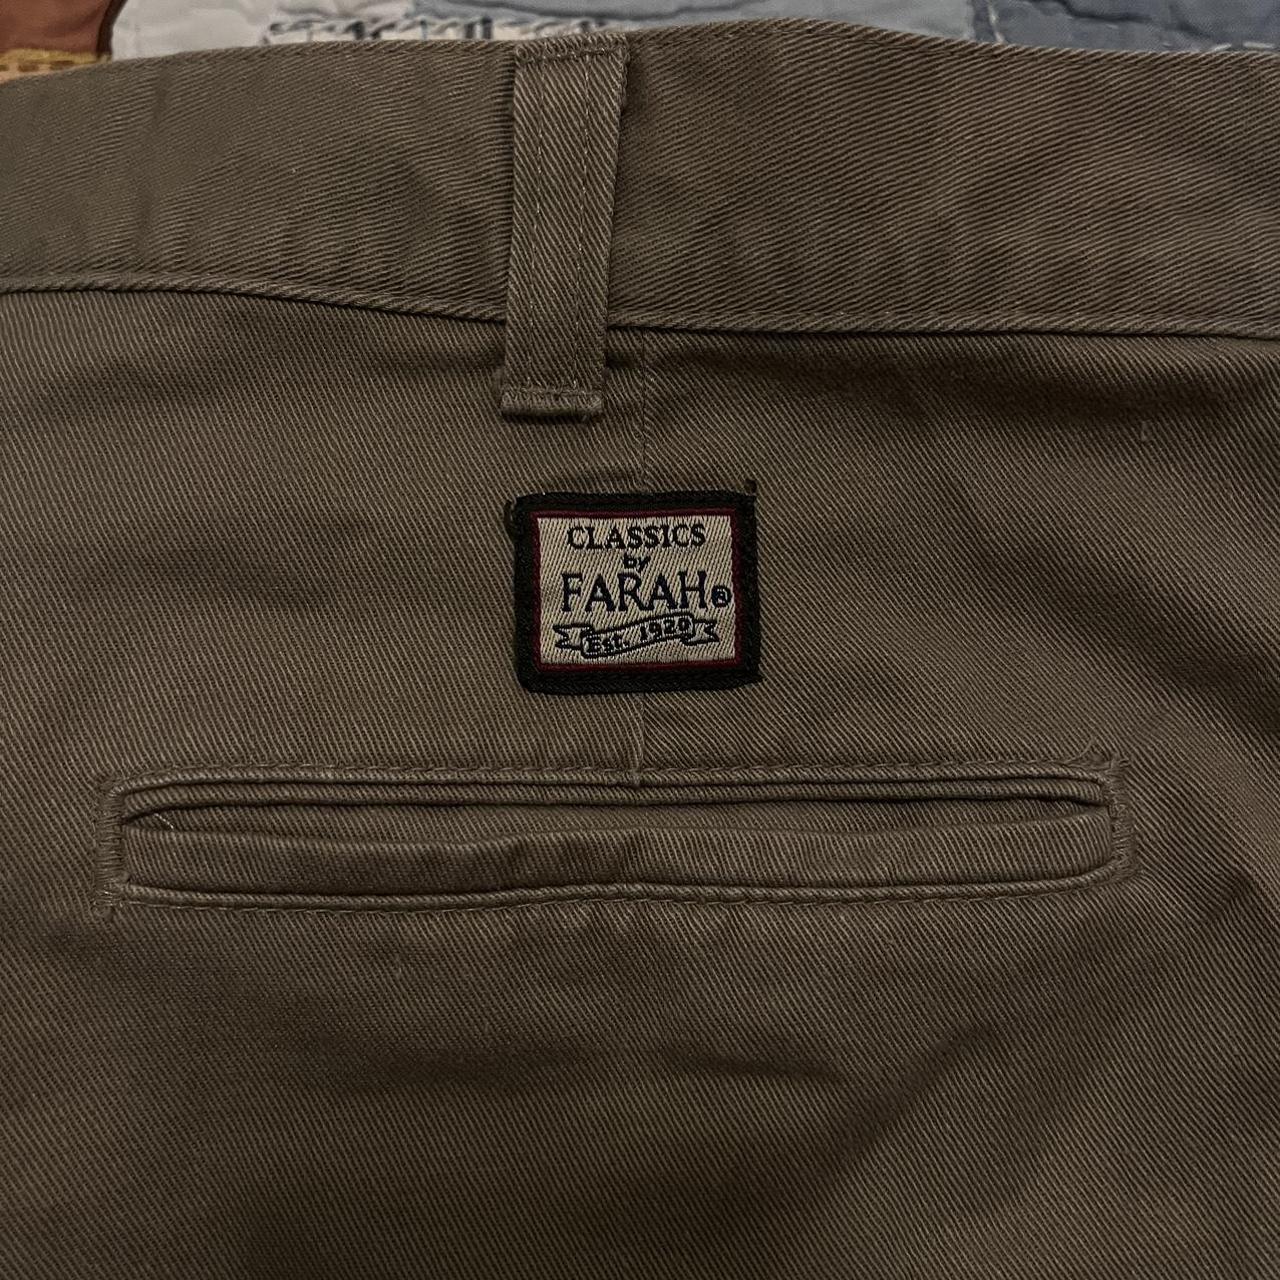 Farah Men's Tan and Brown Trousers (4)